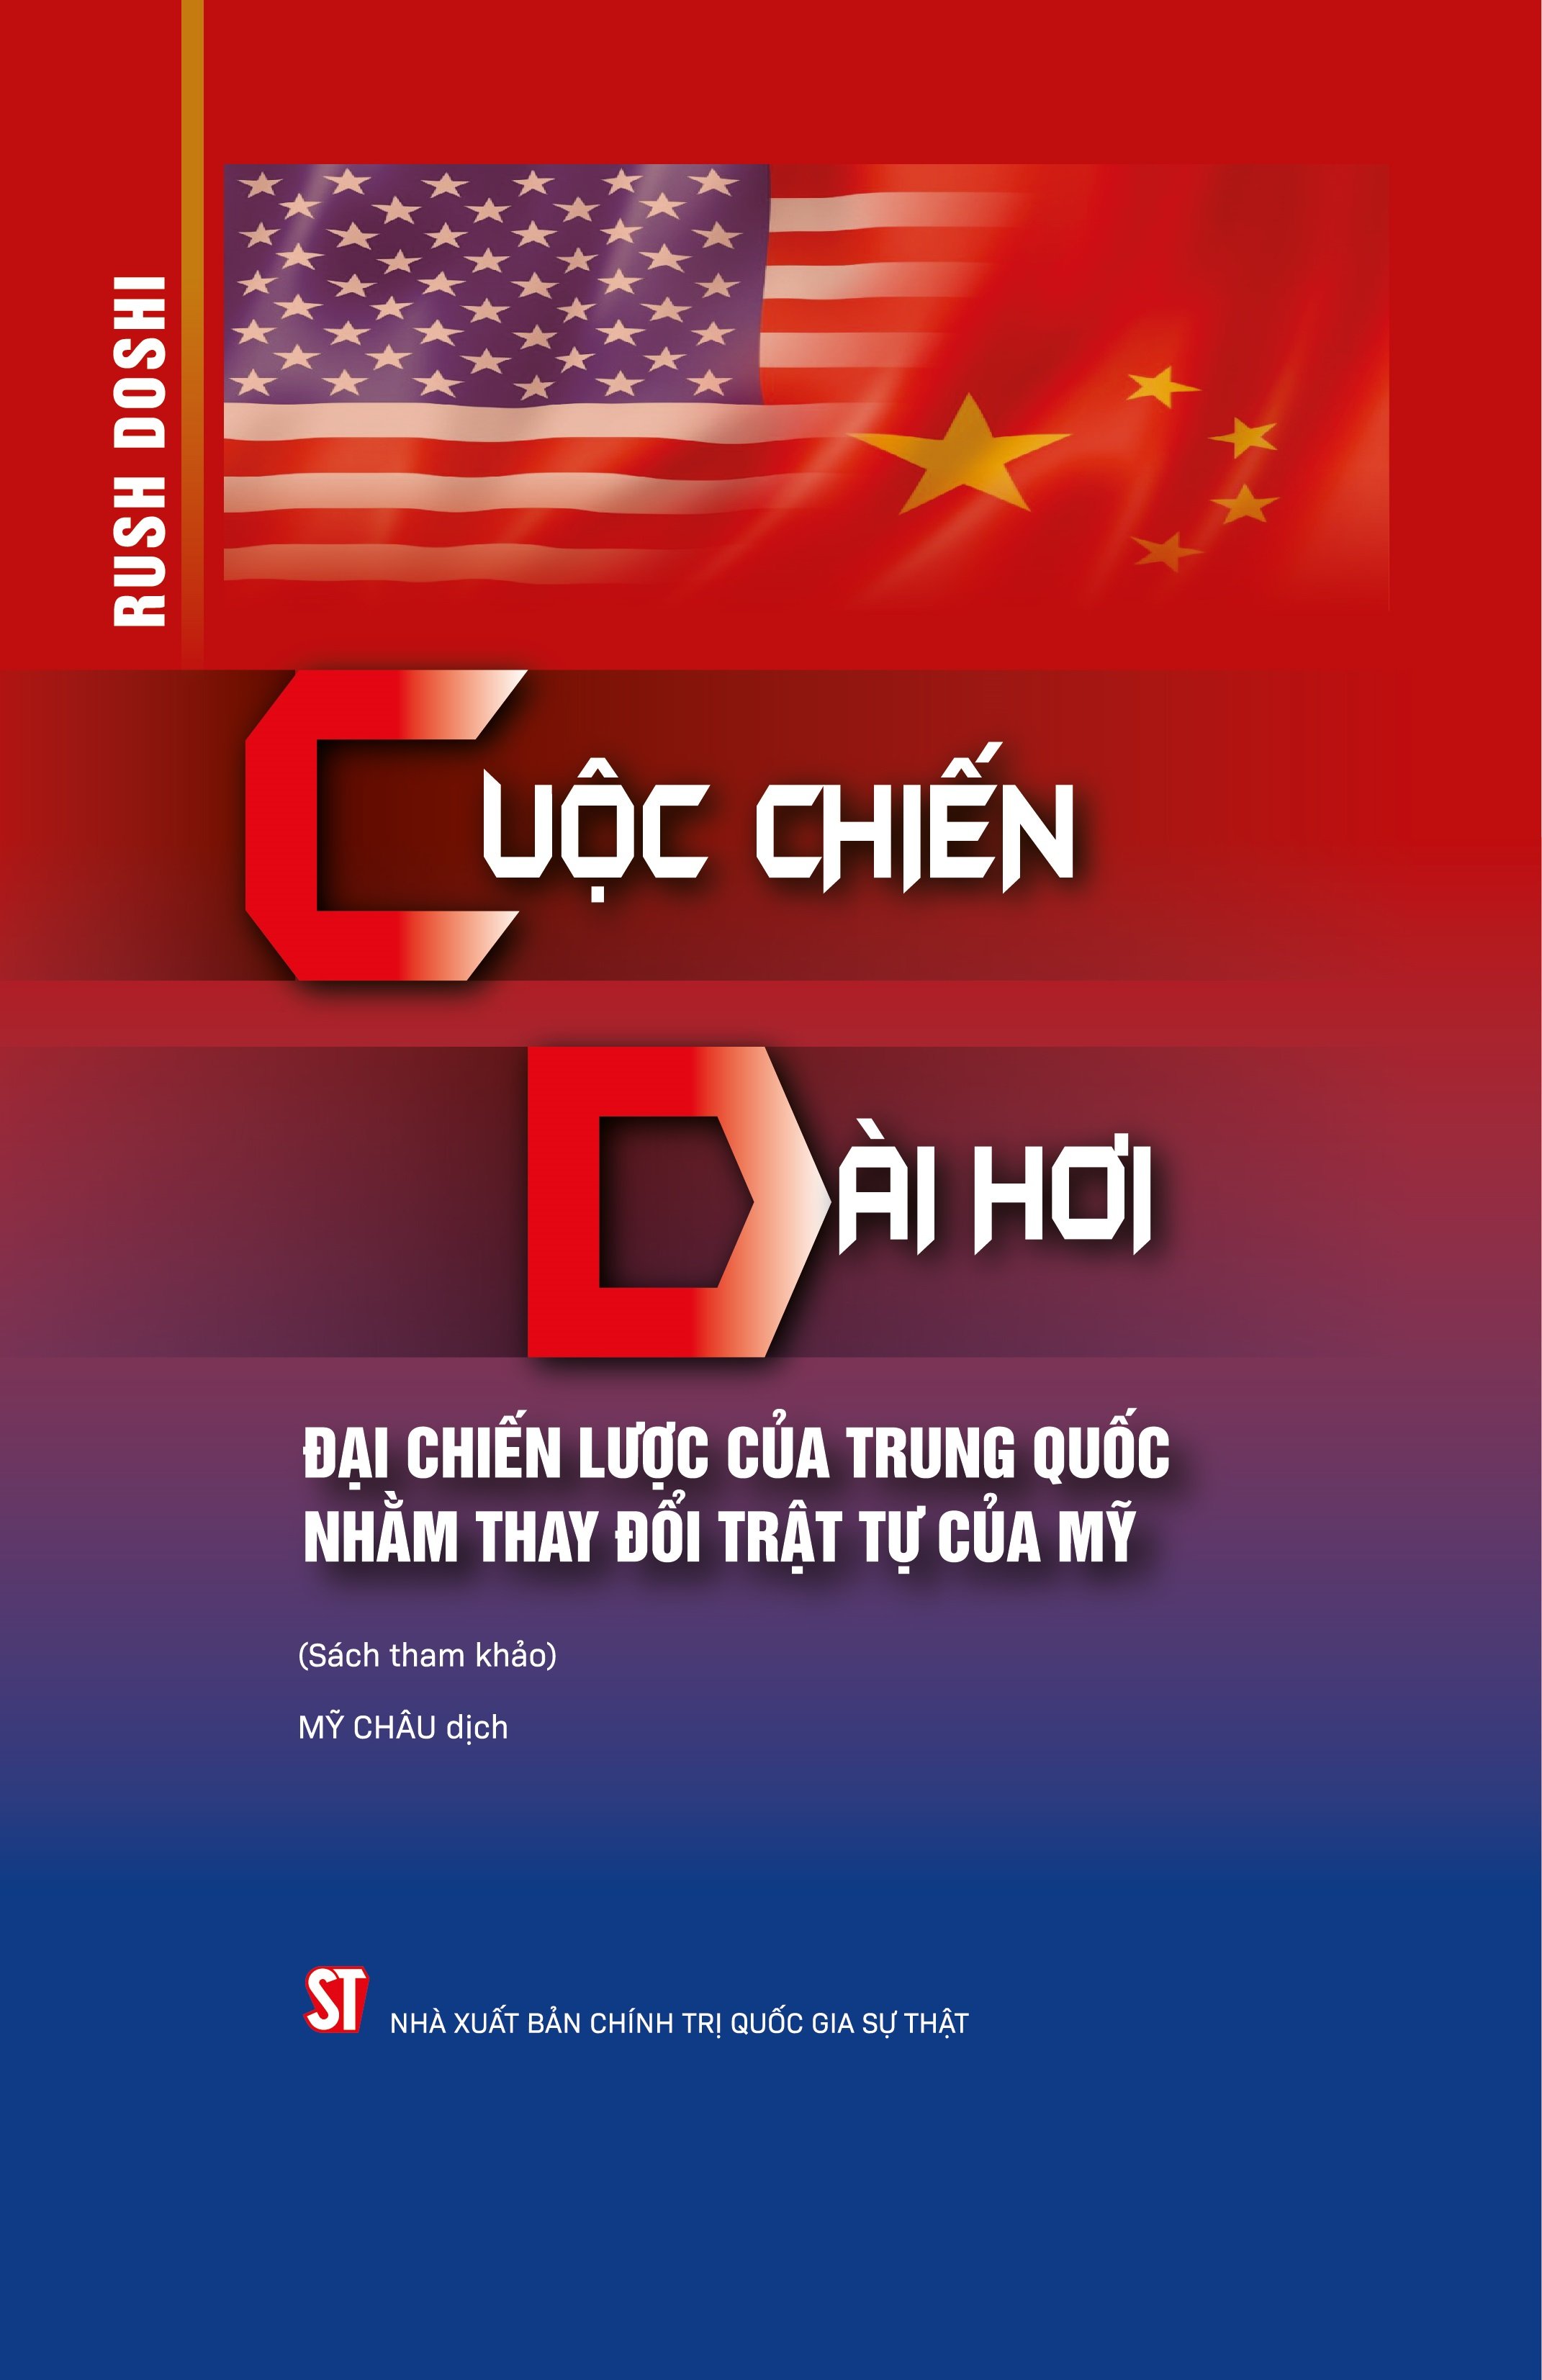 Sách Cuộc chiến dài hơi- Đại chiến lược của Trung Quốc nhằm thay đổi trật tự của Mỹ